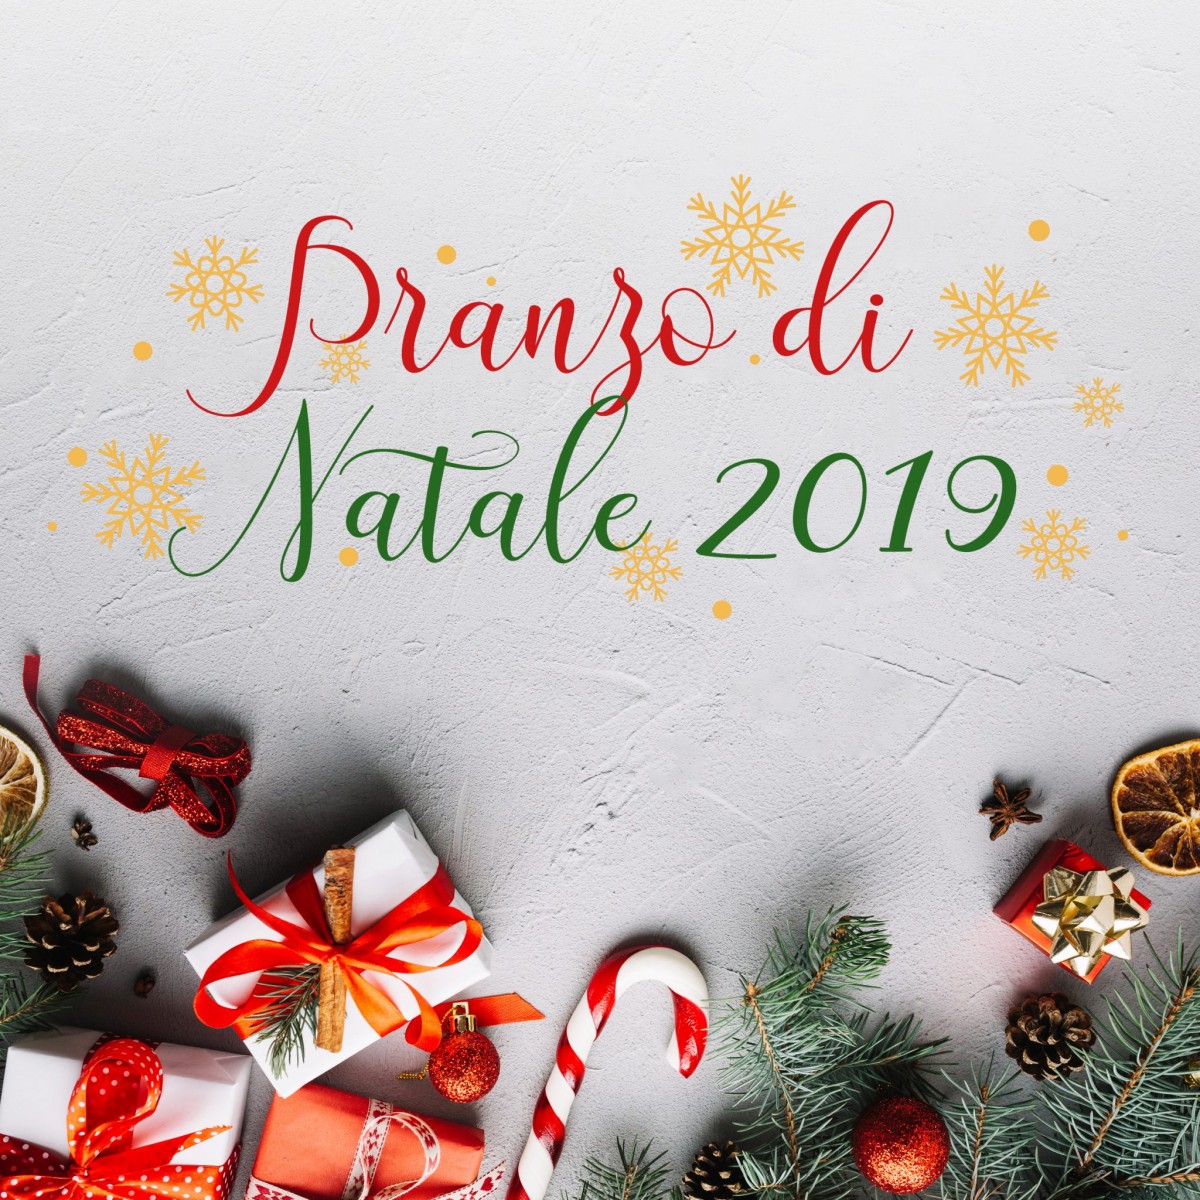 Menu Natale.Pranzo Di Natale 2019 Ristorante Pizzeria Bel Sit